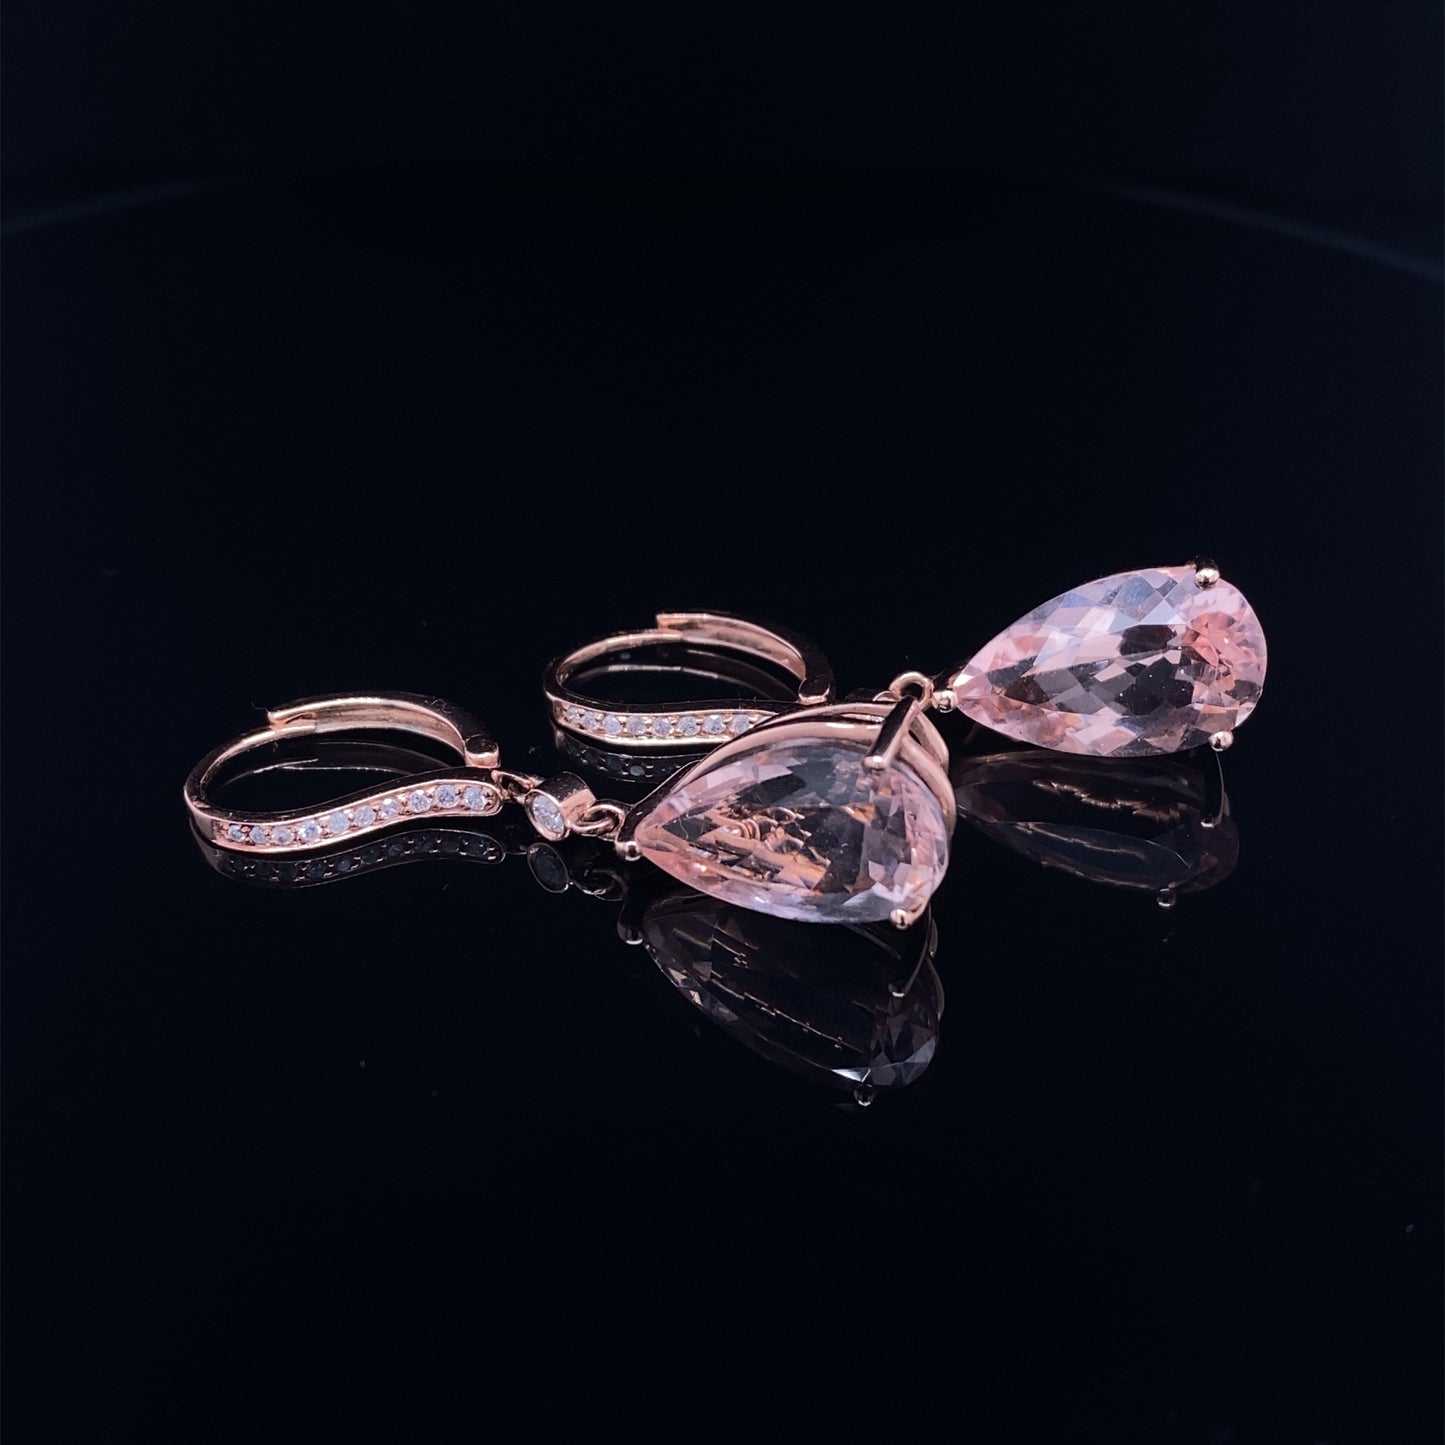 5.0 CTW Pear Morganite and Diamond Dangle Earrings in 14K Rose Gold